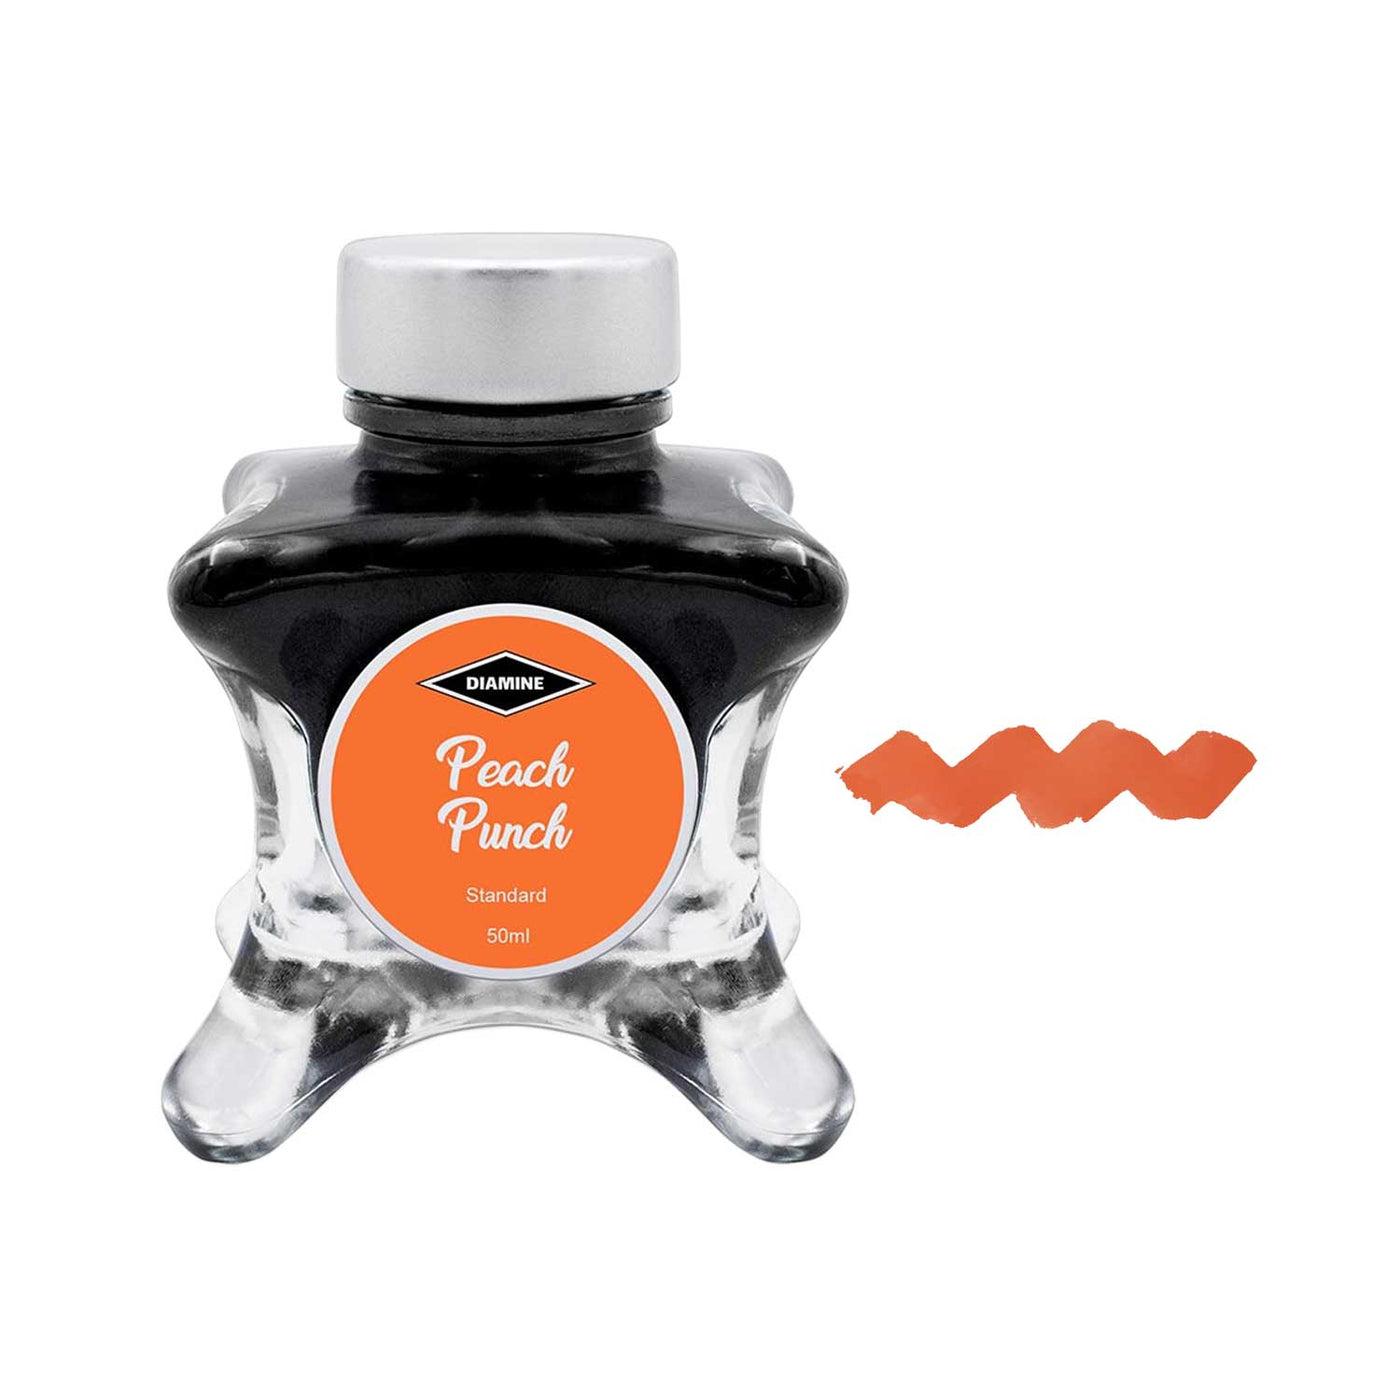 Diamine Inkvent Standard Ink Bottle Peach Punch - 50ml 1